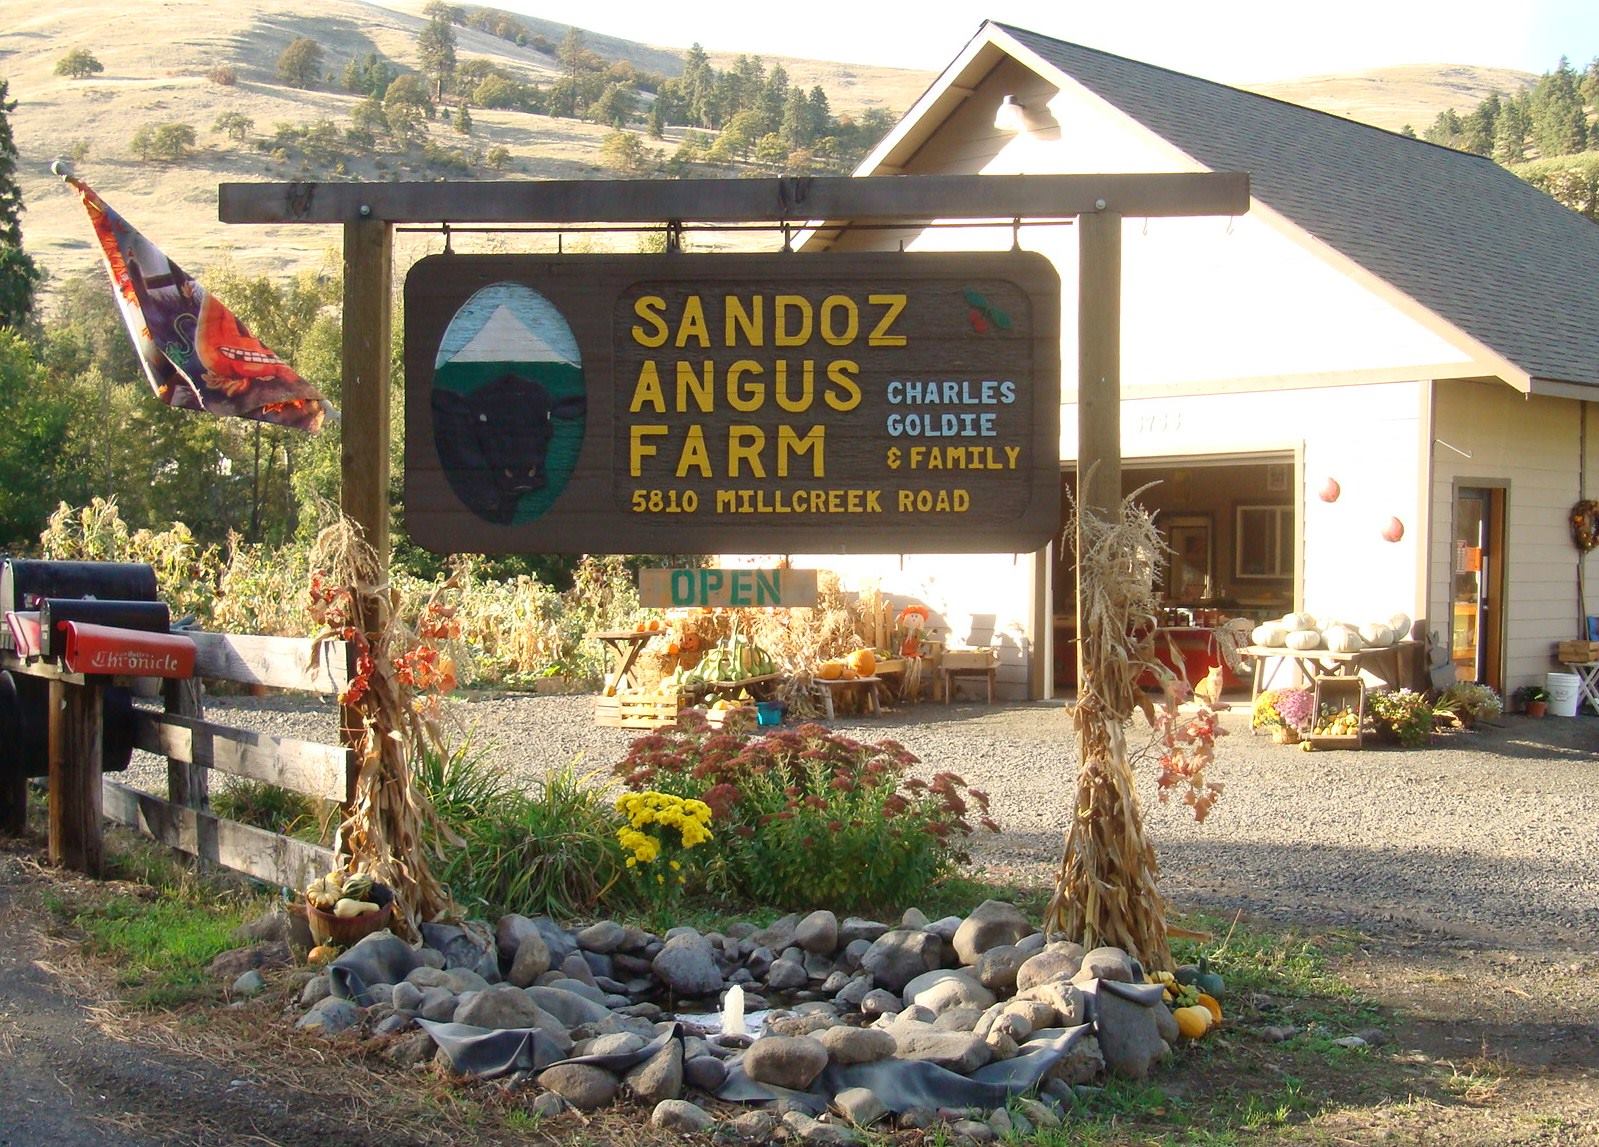 Sandoz Farm